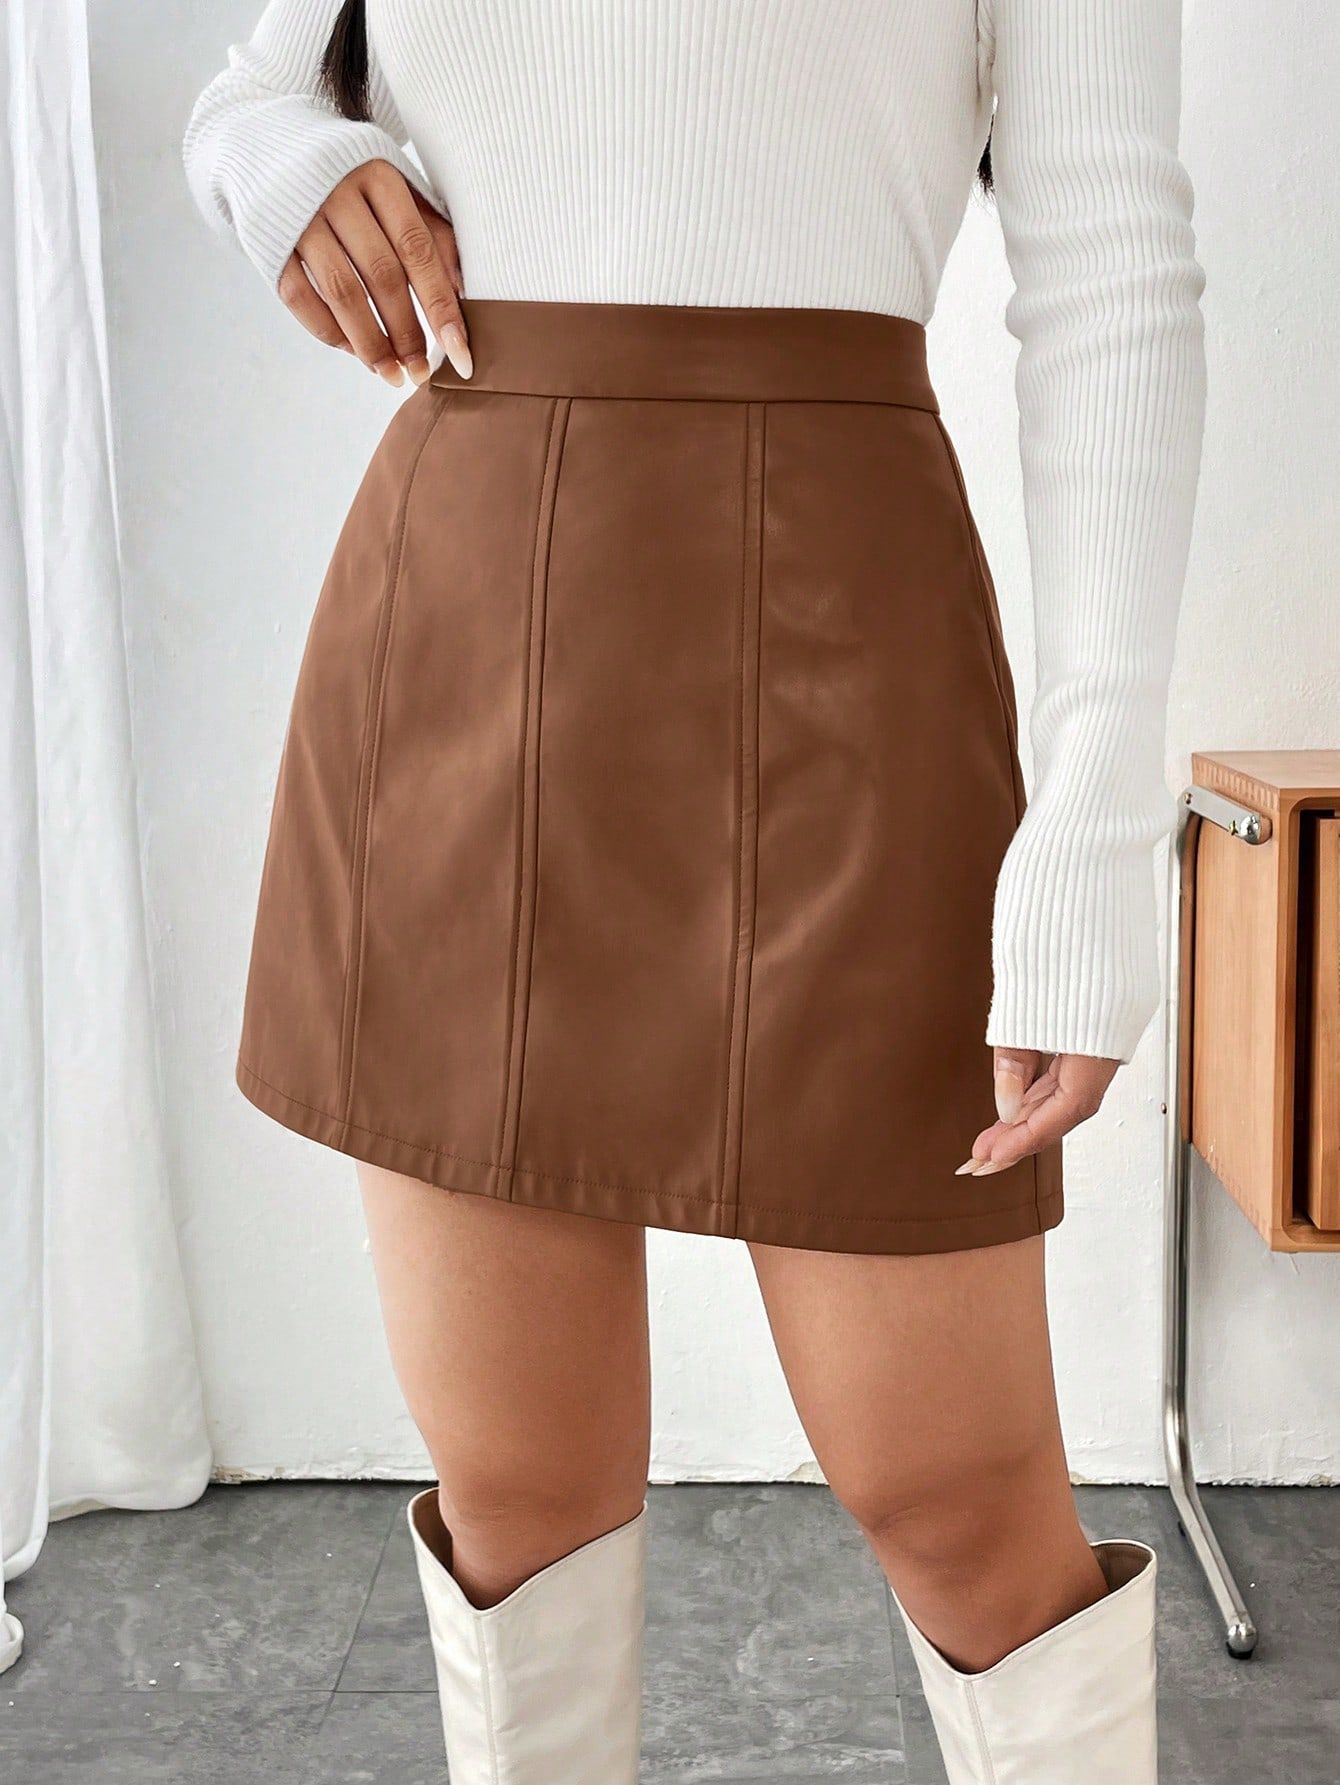 SHEIN Qutie High Waist PU Leather Skirt | SHEIN